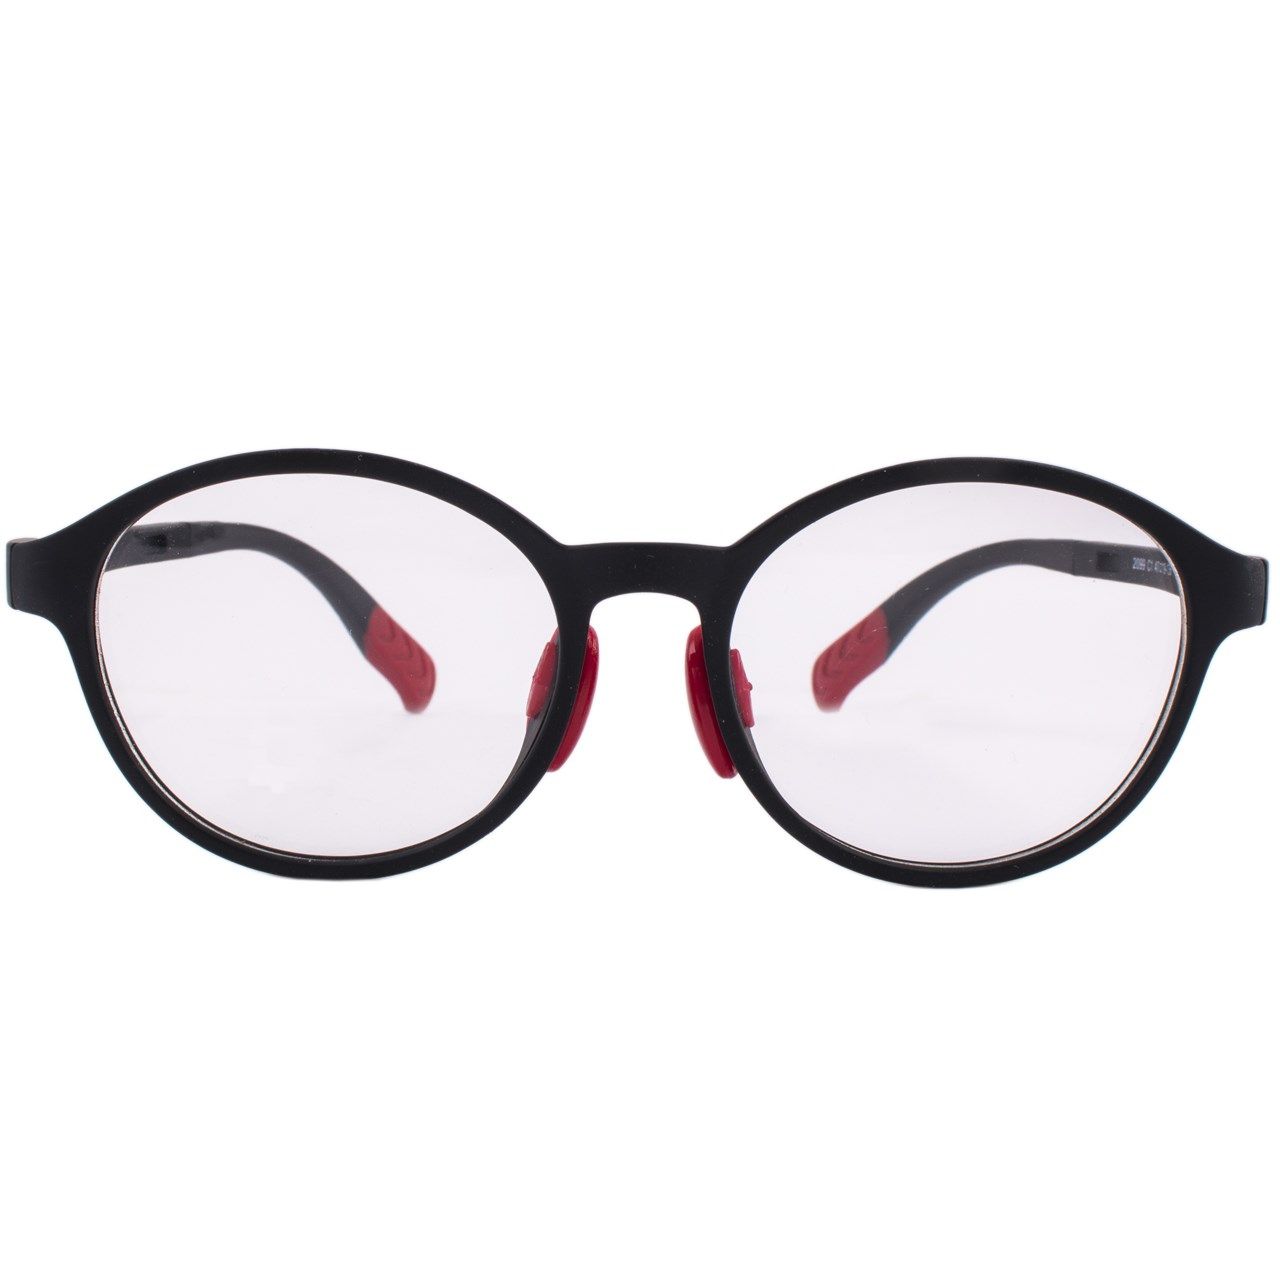 فریم عینک بچگانه واته مدل 2099C1 -  - 1